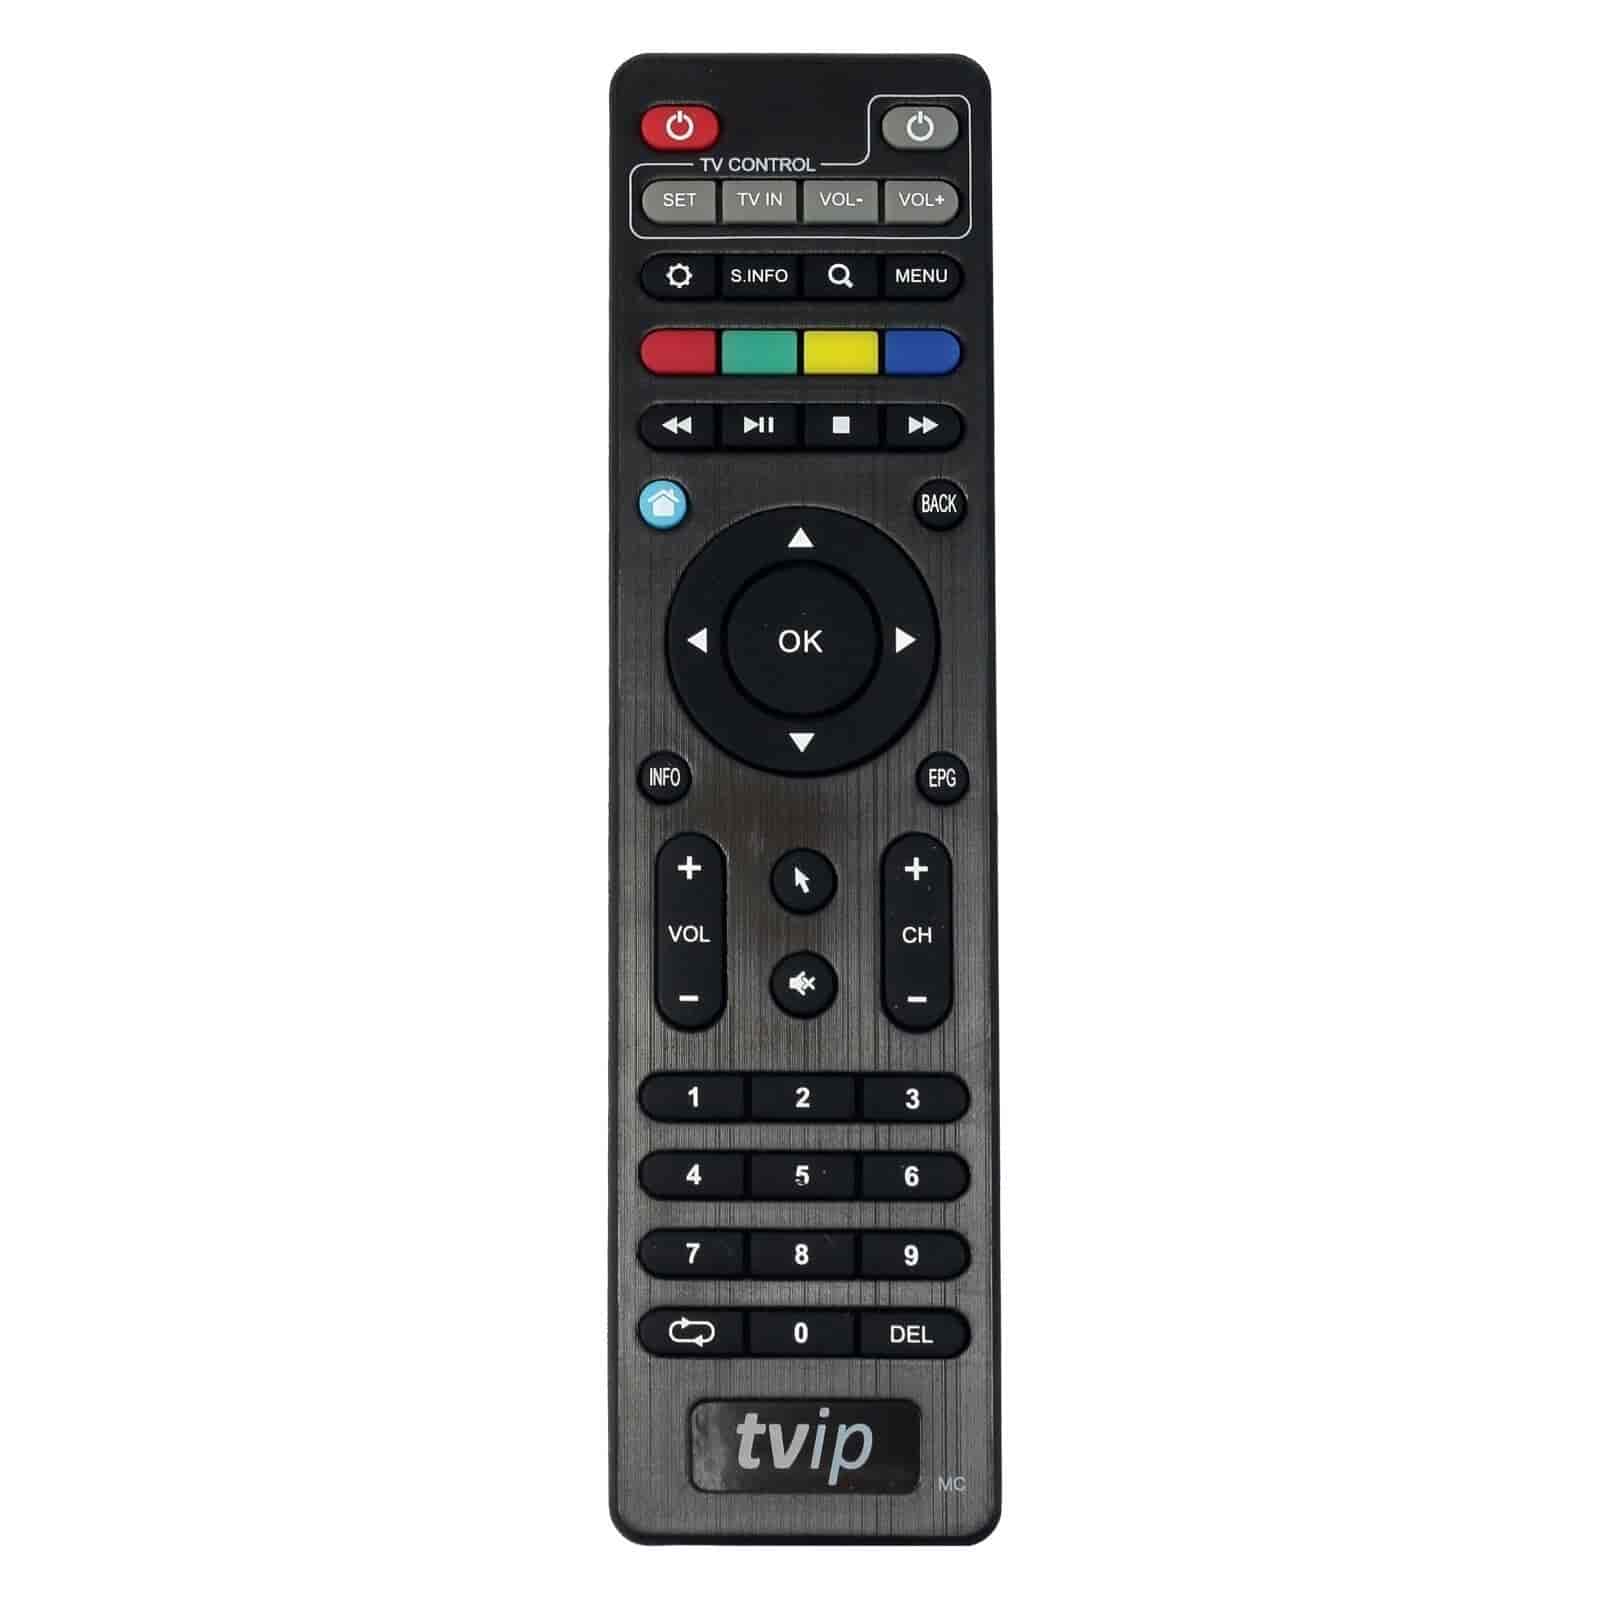 TVIP S-Box v.530 4K UHD IPTV/OTT Multimedie boksTVIPIPTV modtagere Sort TVIP S-Box v.530 er en entry-level IPTV-boks / Multimedia modtager til dig der skal igang med UHD 4K-verdenen. TVIP S-Box v.530 understøtter streaming af medieindhold, video on demand (VoD), digitale kanaler i høj kvalitet samt adgang til OTT-indhold såsom YouTube, Picasa, vejrudsigter og meget mere. TVIP 530 kan udvides med WiFi med en WiFi USB antenne. 